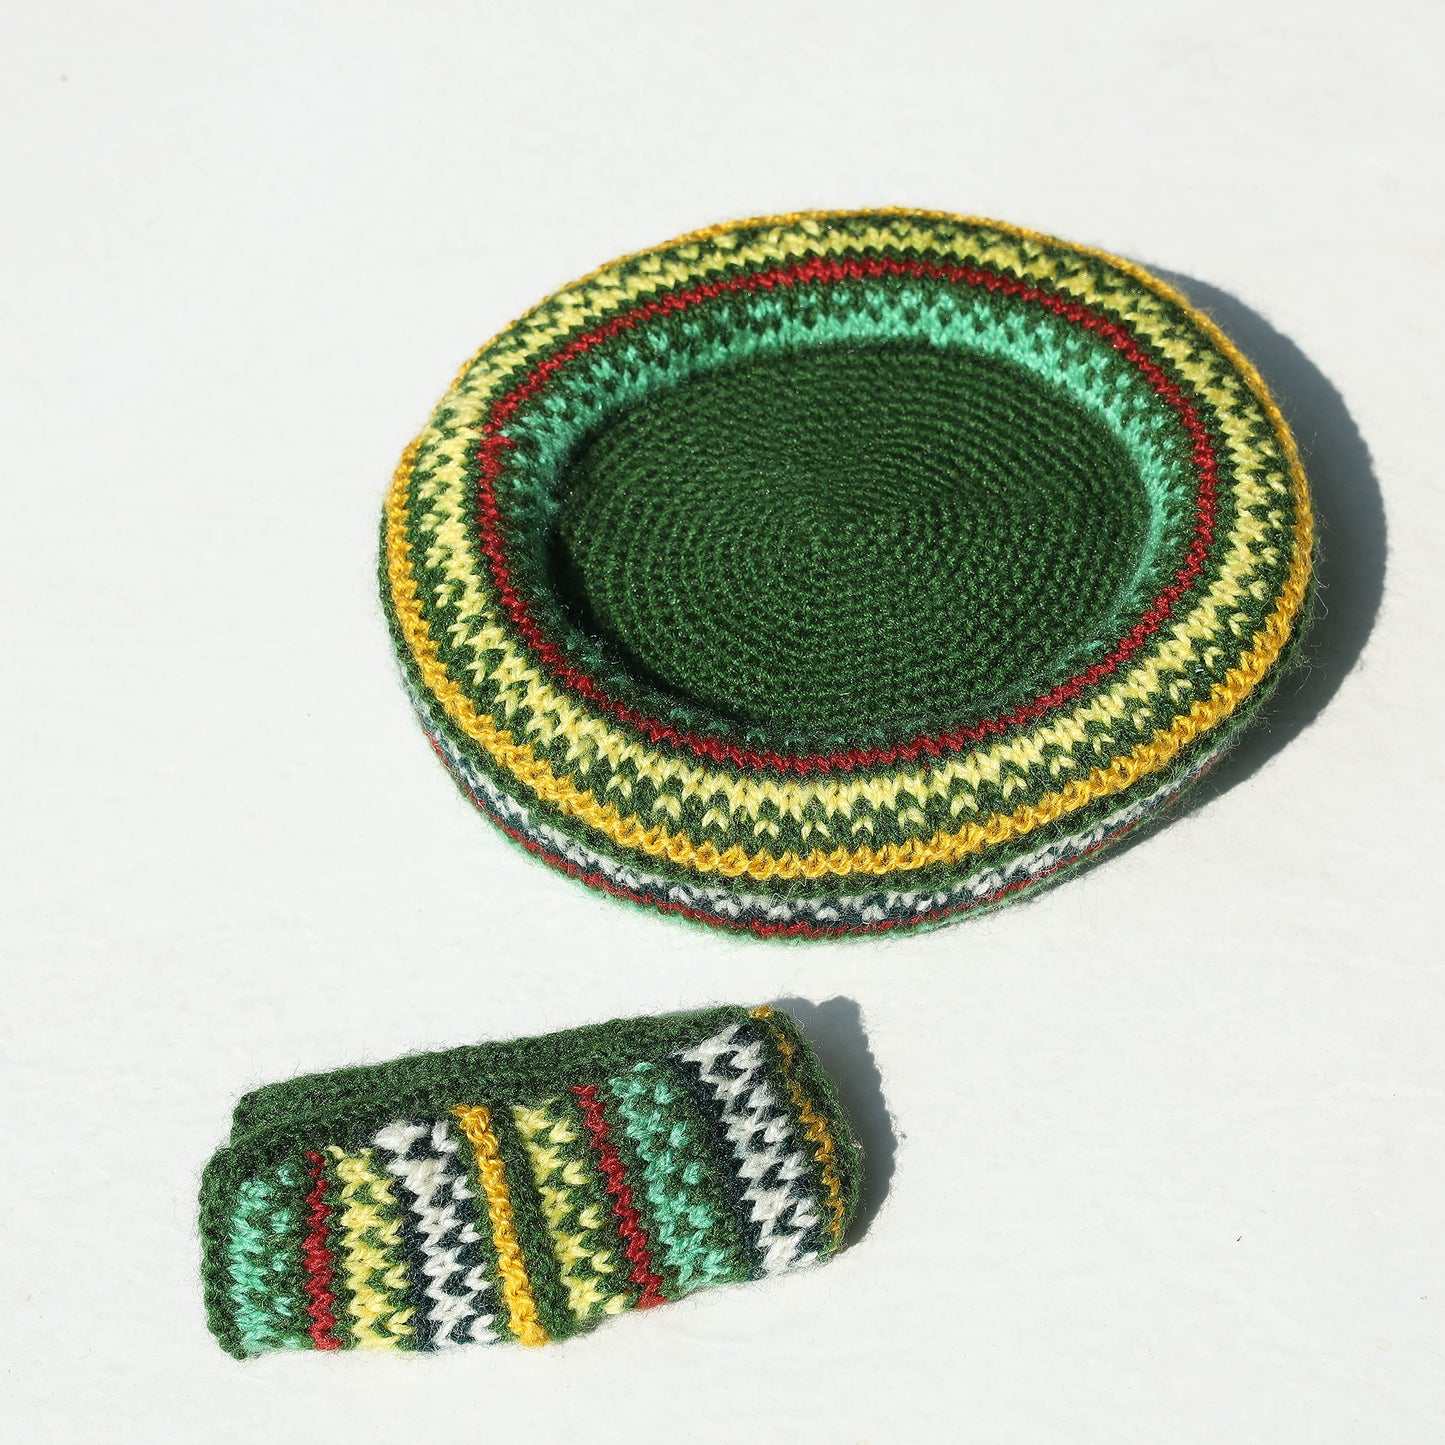 Kumaun Hand-knitted Woolen Tea Cozy Set